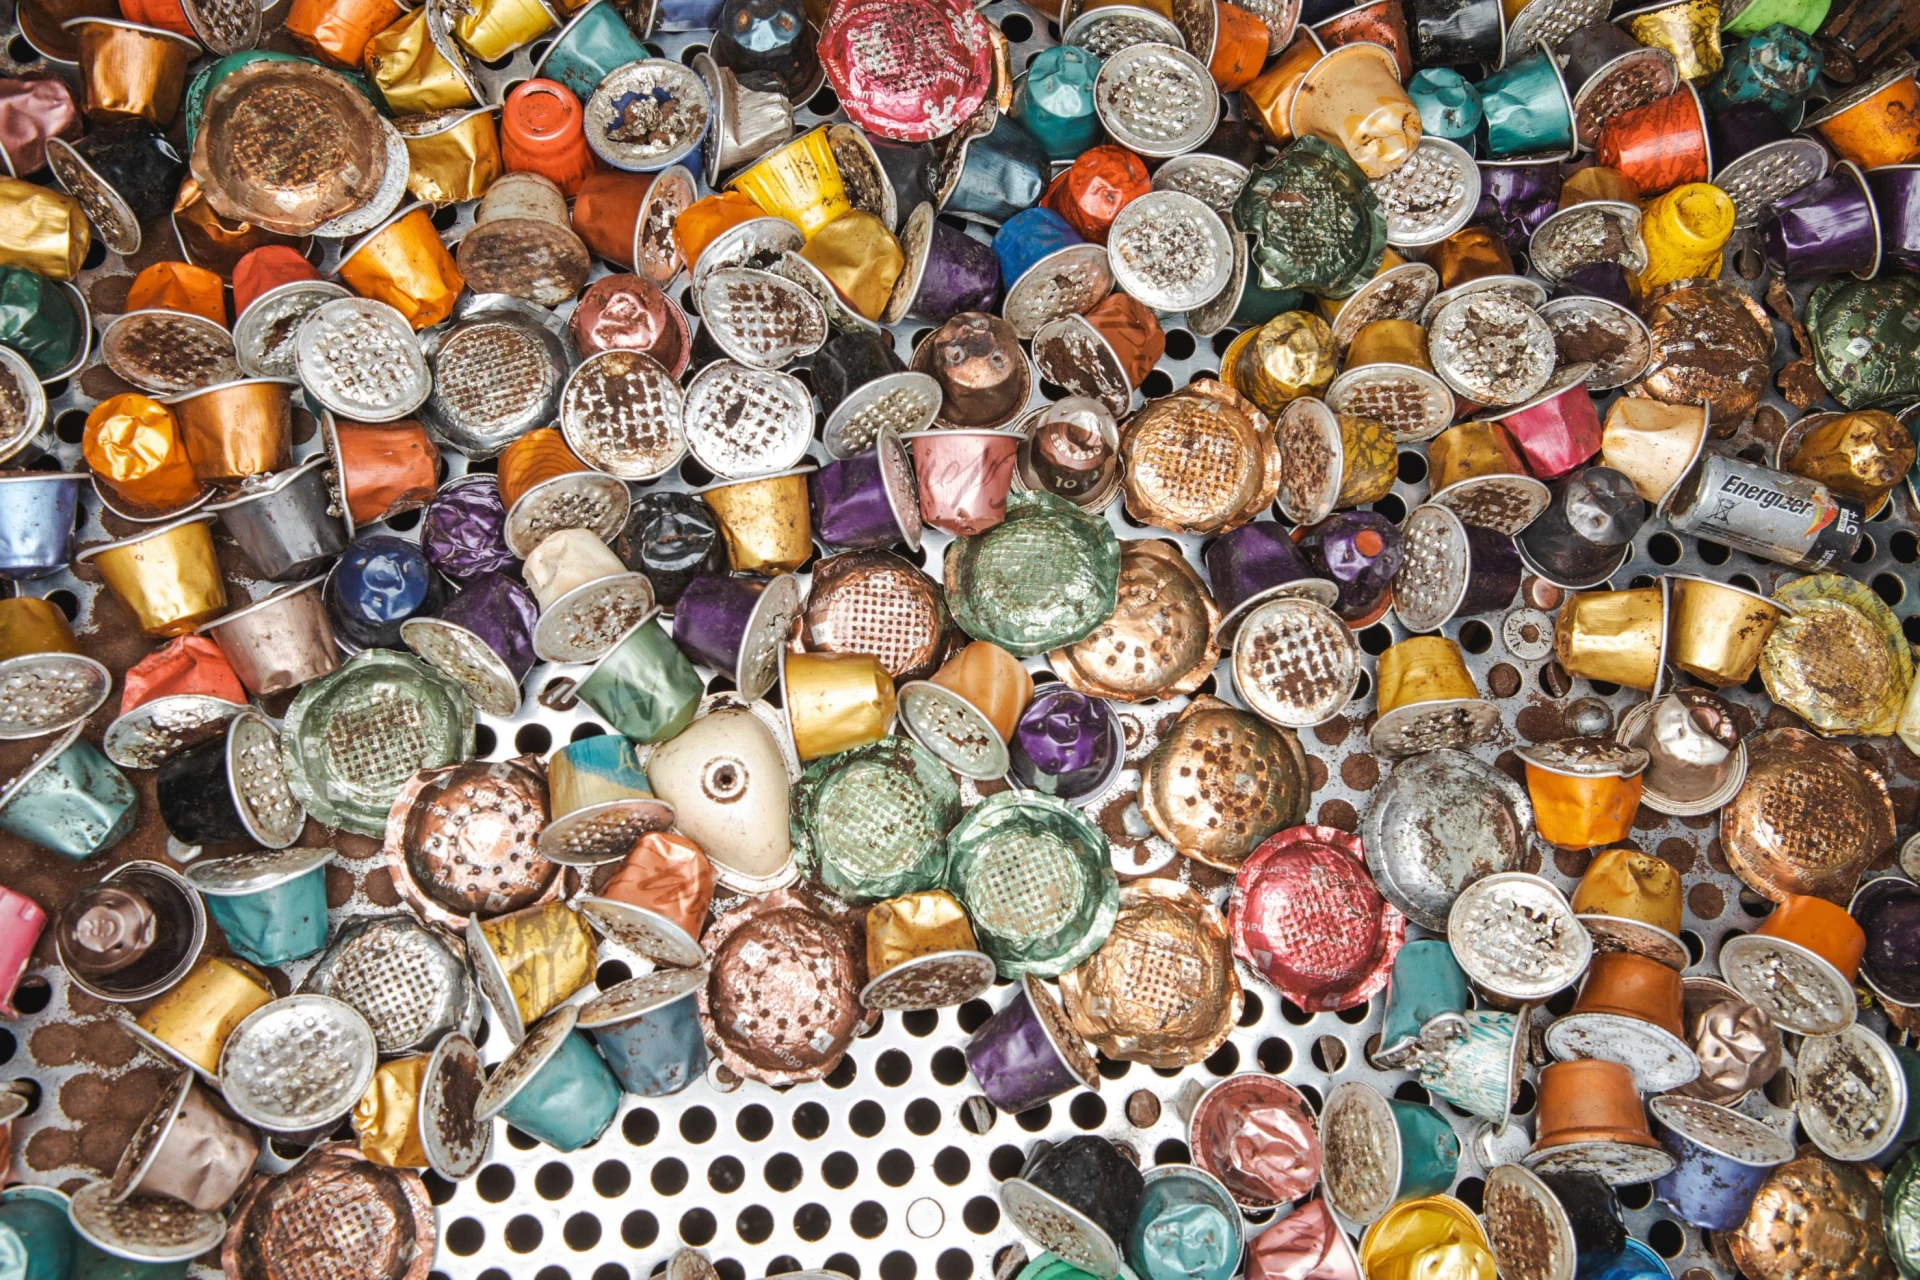 Les capsules usagées colorées sont séparées des autres objets dans une sorte de tamis.